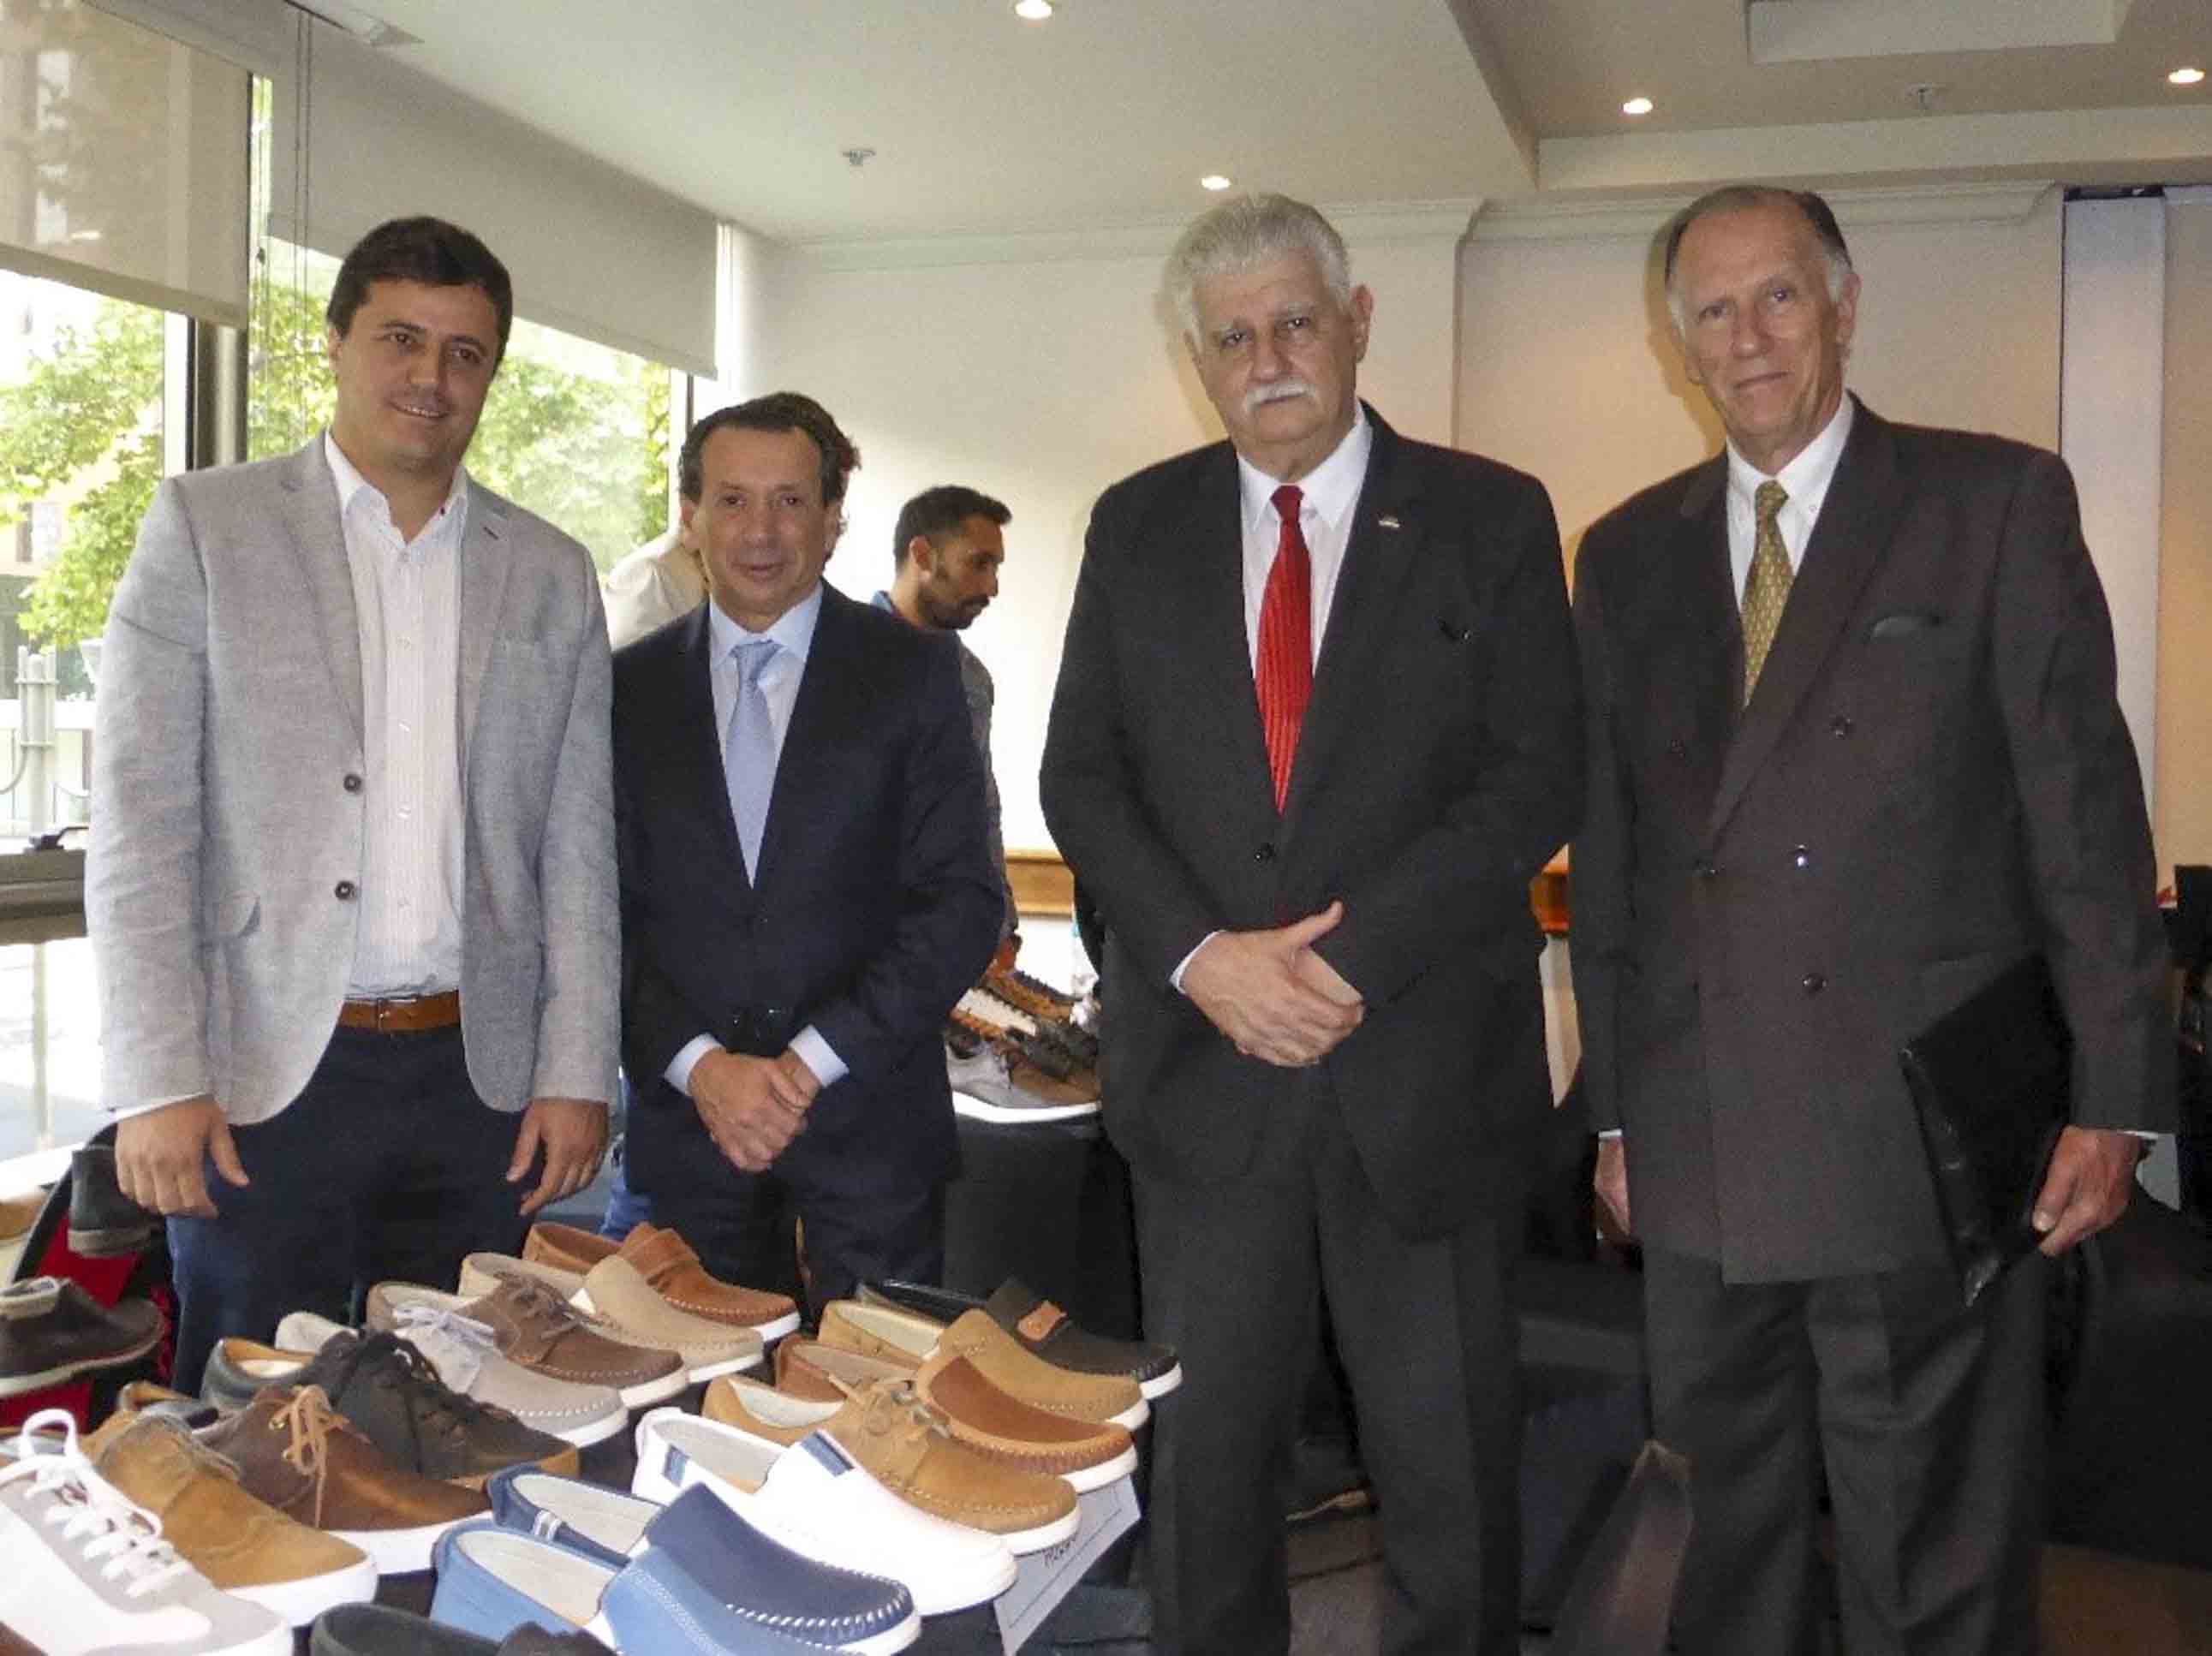 De izq. a derecha: Ing. Alejandro Wagner (AAICI), Embajador José Octavio Bordón, Ministro Dante Sica, Sr. Alberto Sellaro (CIC), Sr. Félix Halcartegaray (Fedeccal)